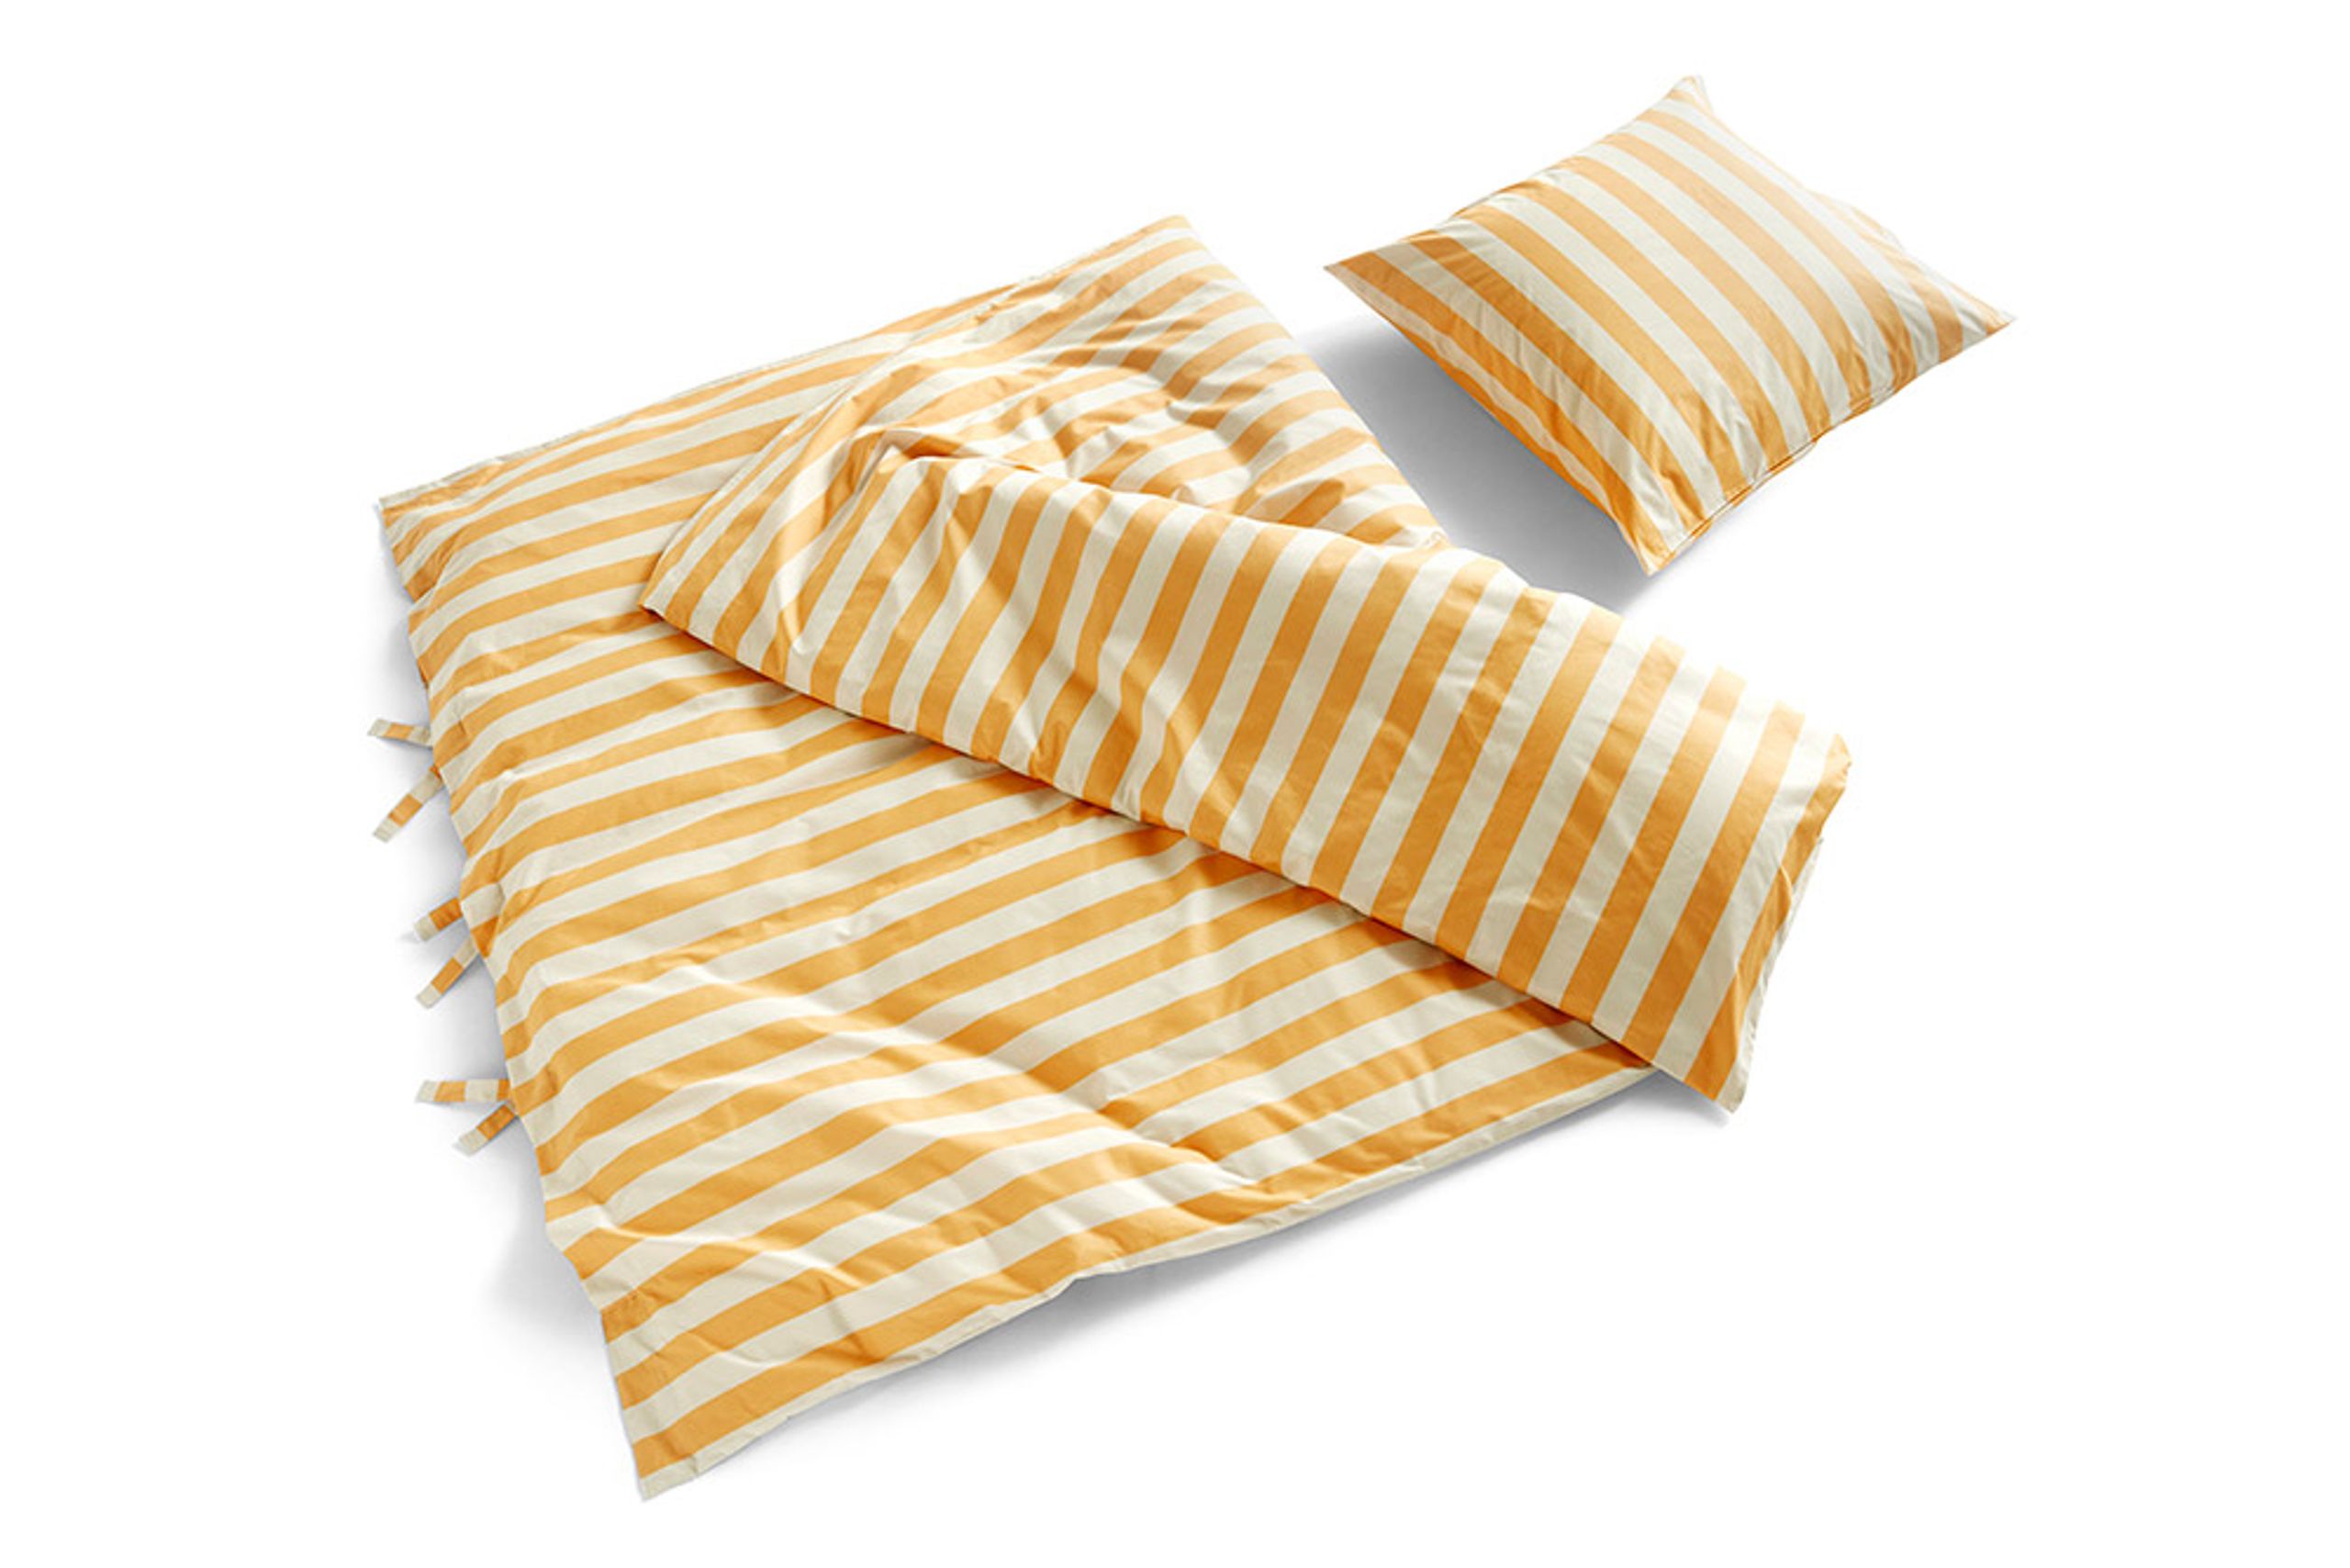 HAY - Ensemble de lit - Été Bed Linen Set - Warm Yellow